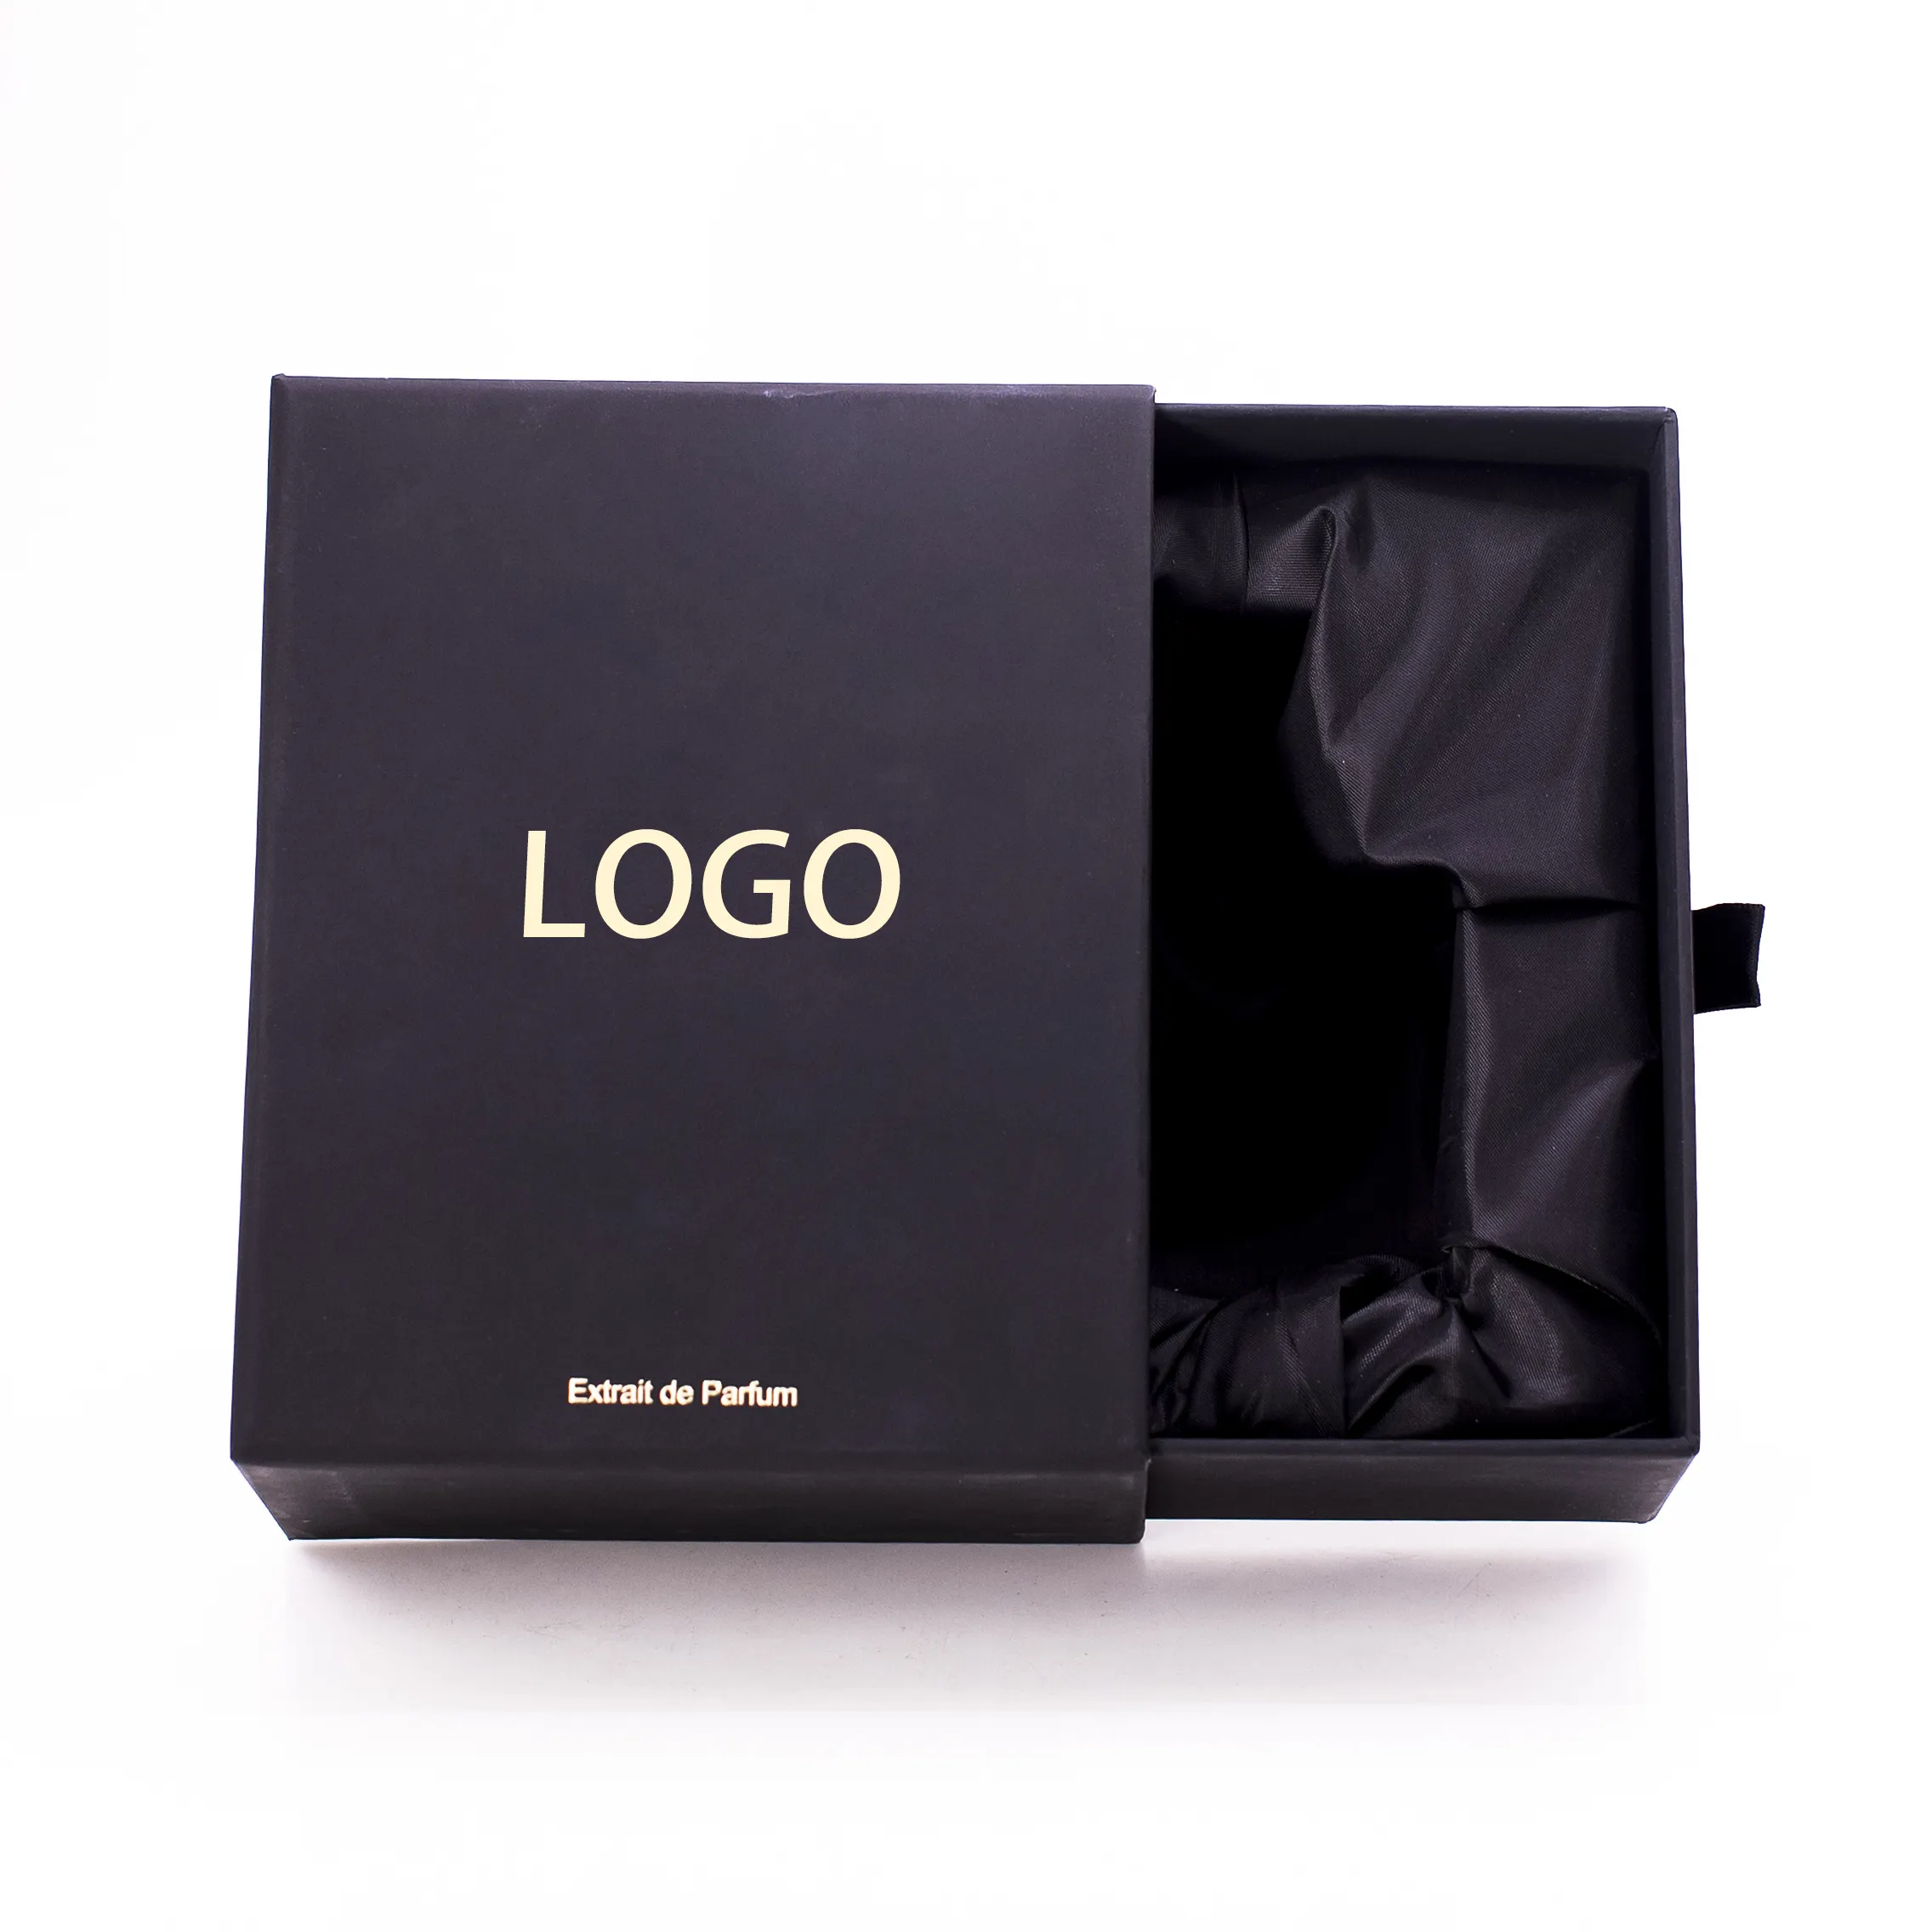 Geri dönüşümlü özel parfüm yapımı sert kağıt lüks hediye kutuları karton ambalaj özelleştirmek kayan çekmece kutu